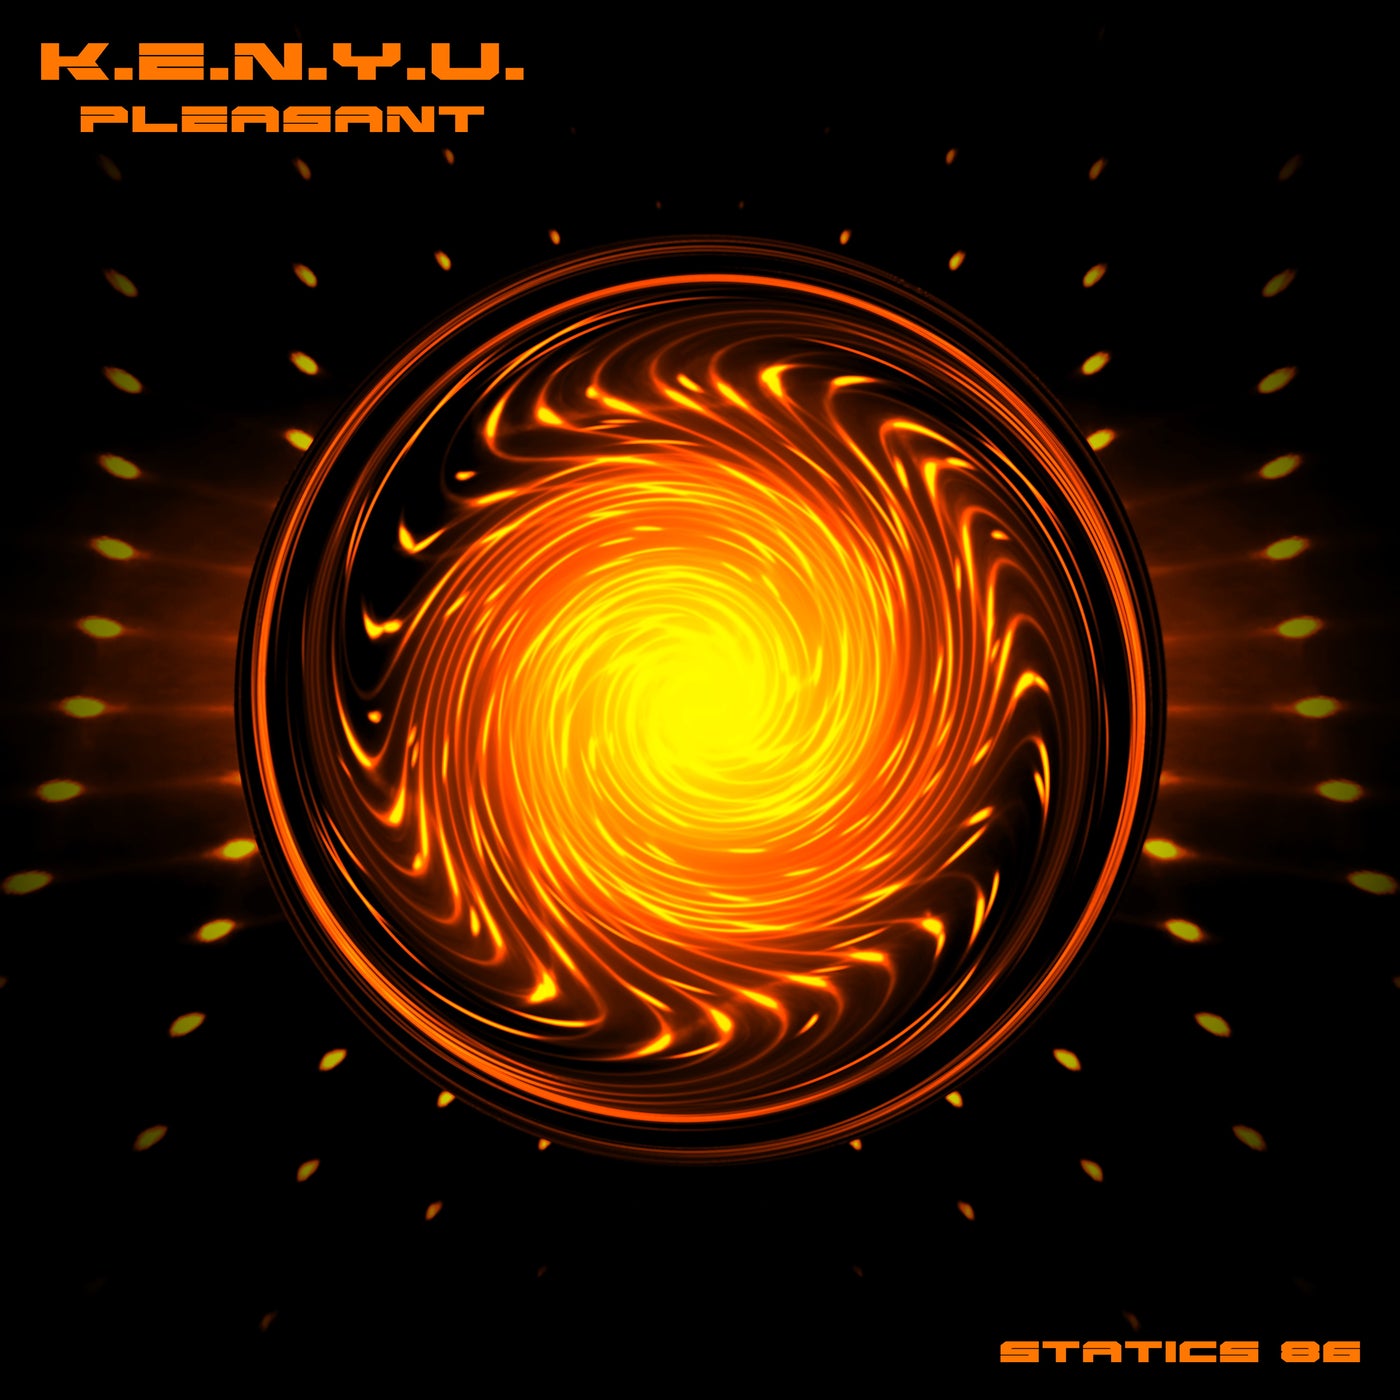 K.E.N.Y.U. music download - Beatport